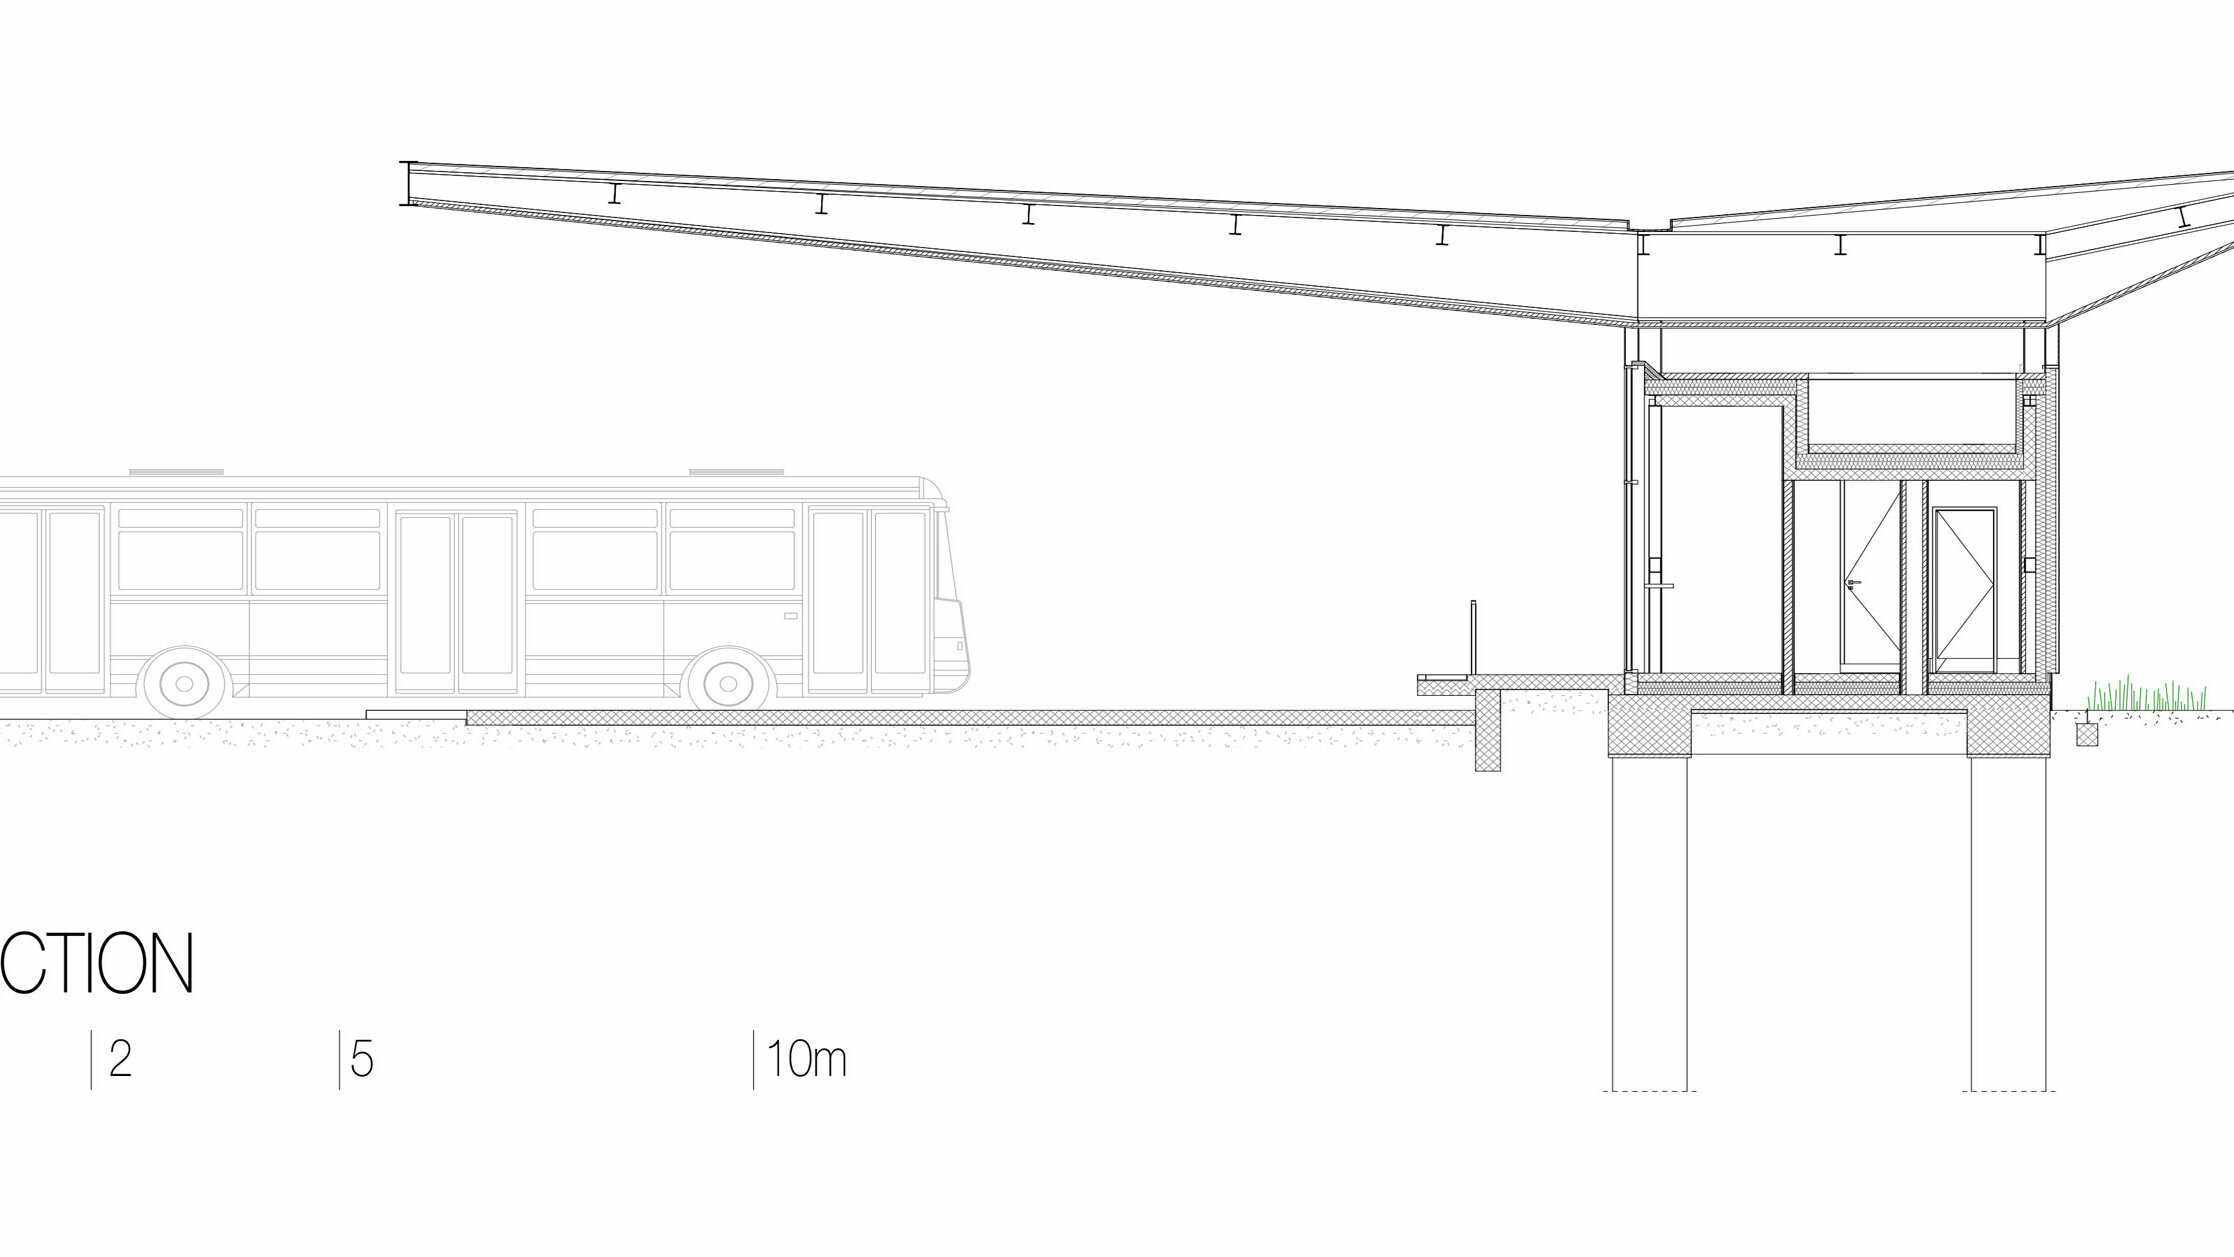 Na nacrtu se nalazi poprečni presjek autobusne postaje „Autobusni kolodvor Slavonski Brod“ u Hrvatskoj. Presjek prikazuje konstrukciju zgrade, uključujući bijeli Prefalz krov tvrtke PREFA, koji počiva na elegantnim stupovima i proteže se u okolno područje, dalje od same građevine. Ispod krova nalaze se unutarnji prostori postaje, čistih linija i s velikim staklenim površinama. Nacrt također prikazuje konstrukciju temelja i podzemne potpornje koji nose strukturu. Na lijevoj je strani prikazan autobus za predodžbu proporcija. Presjek naglašava moderan i funkcionalan način gradnje postaje, kao i integraciju stakla i aluminija u dizajnu.